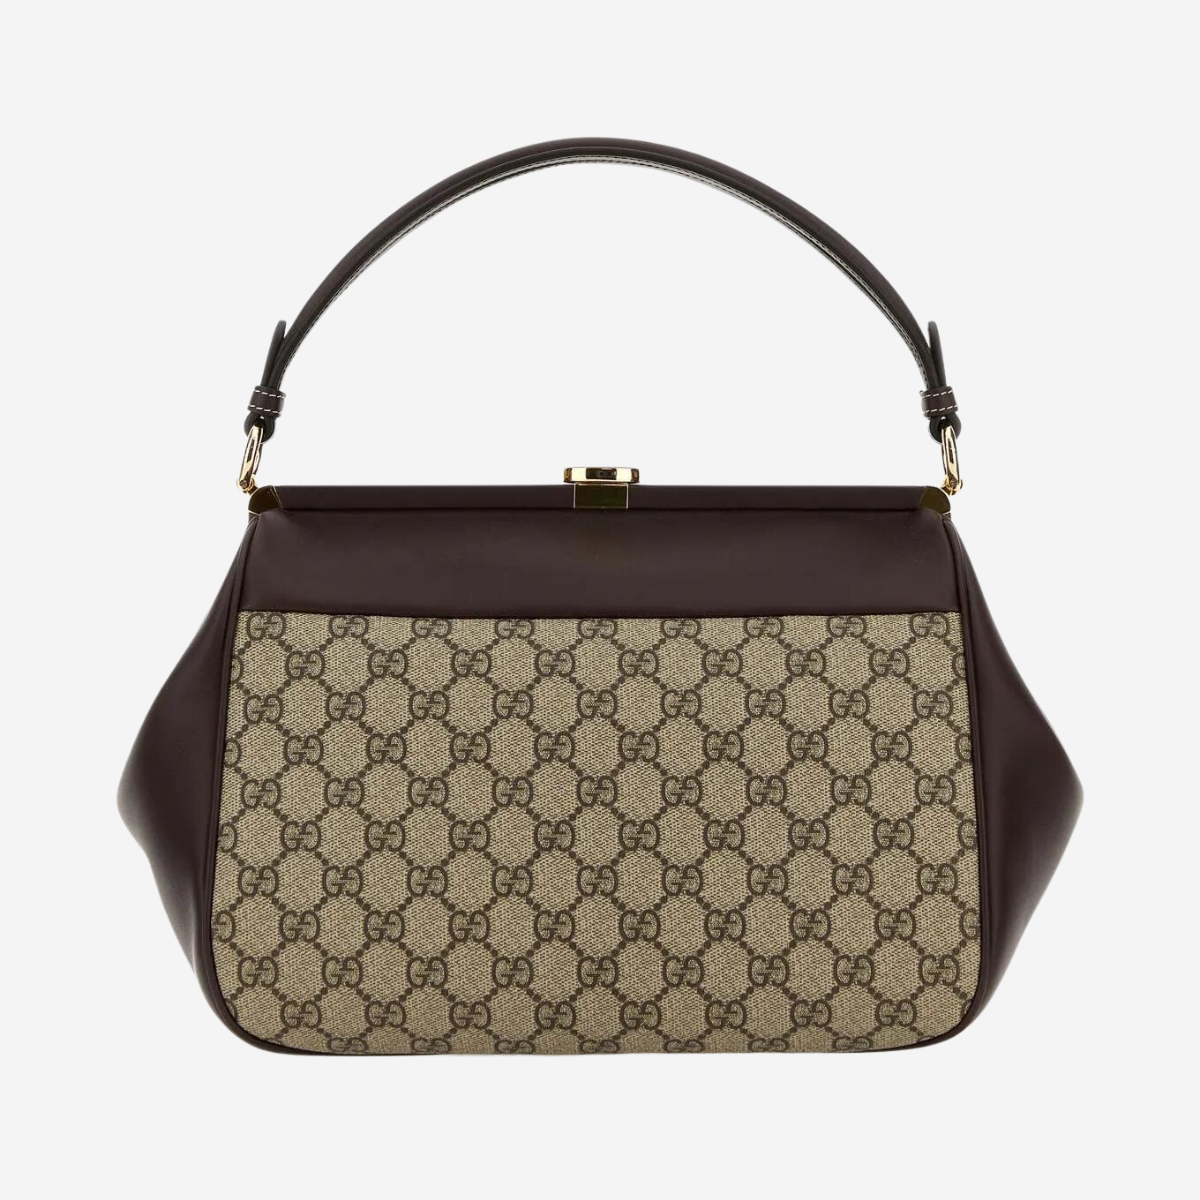 Gucci Gg Supreme Fabric And Leather Handbag-2